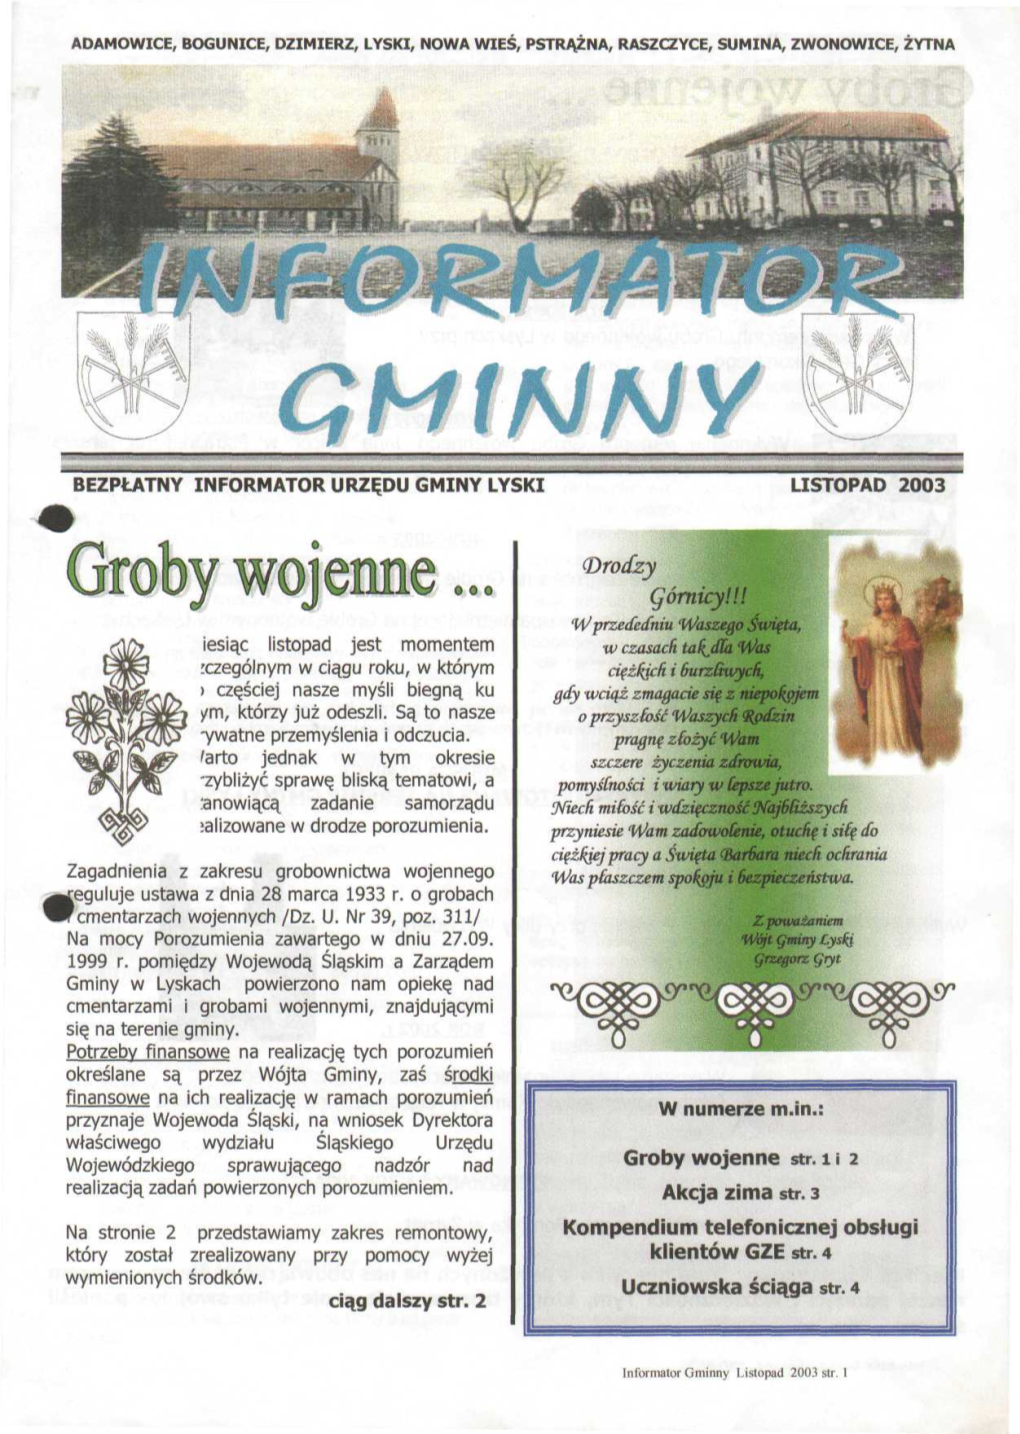 Gminny Bezpłatny Informator Urzędu Gminy Łyski Listopad 2003